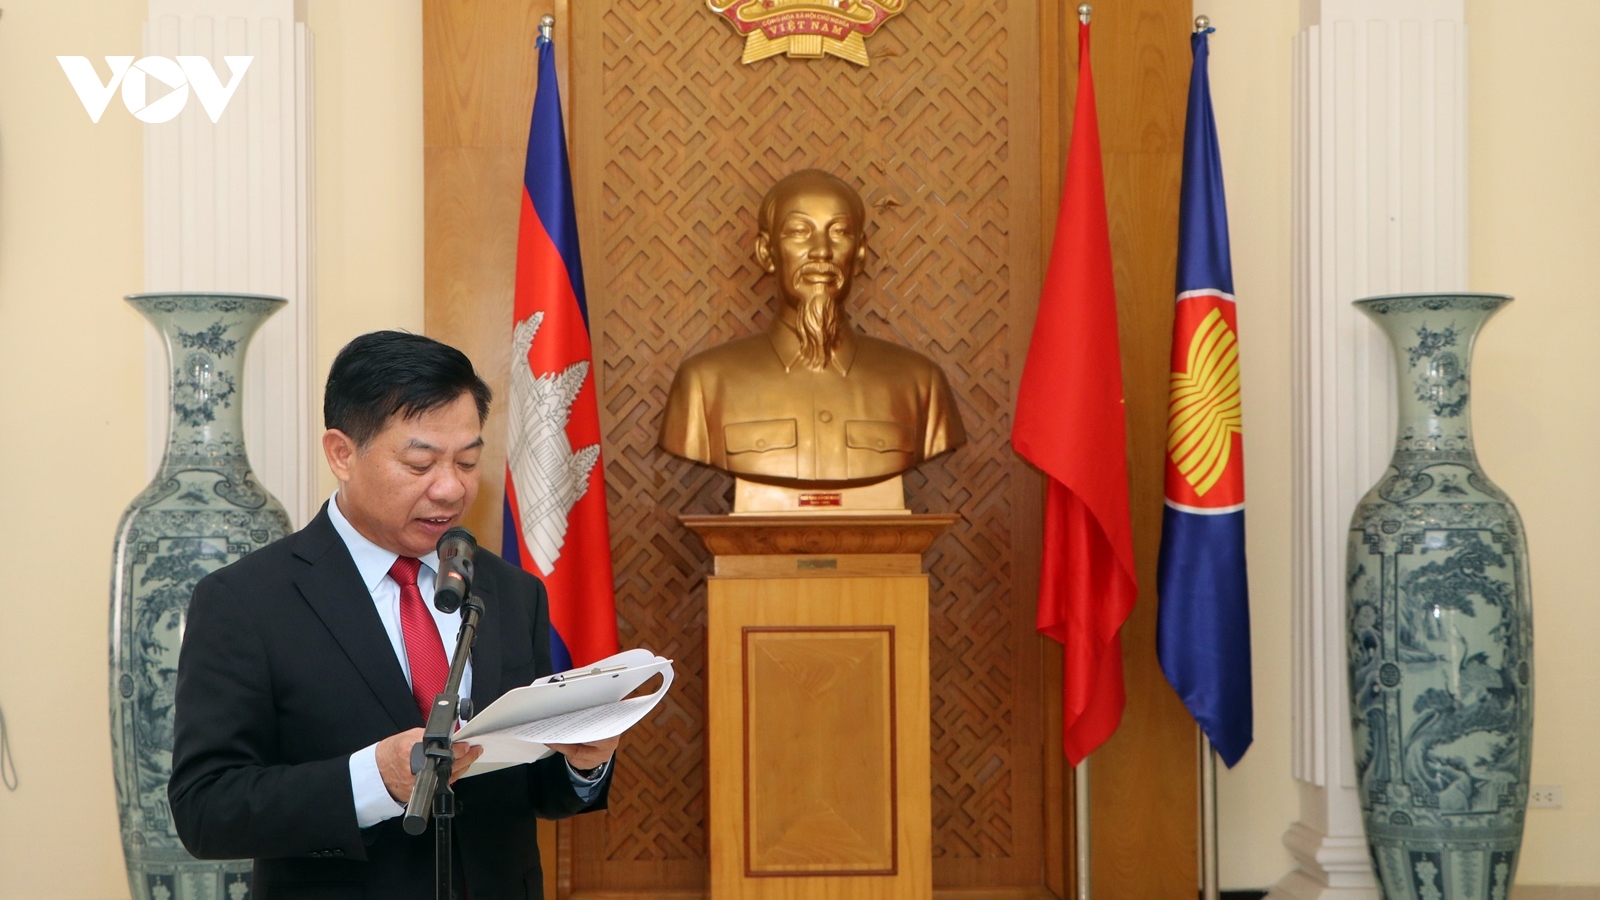 Kỷ niệm 134 năm ngày sinh Chủ tịch Hồ Chí Minh tại Campuchia